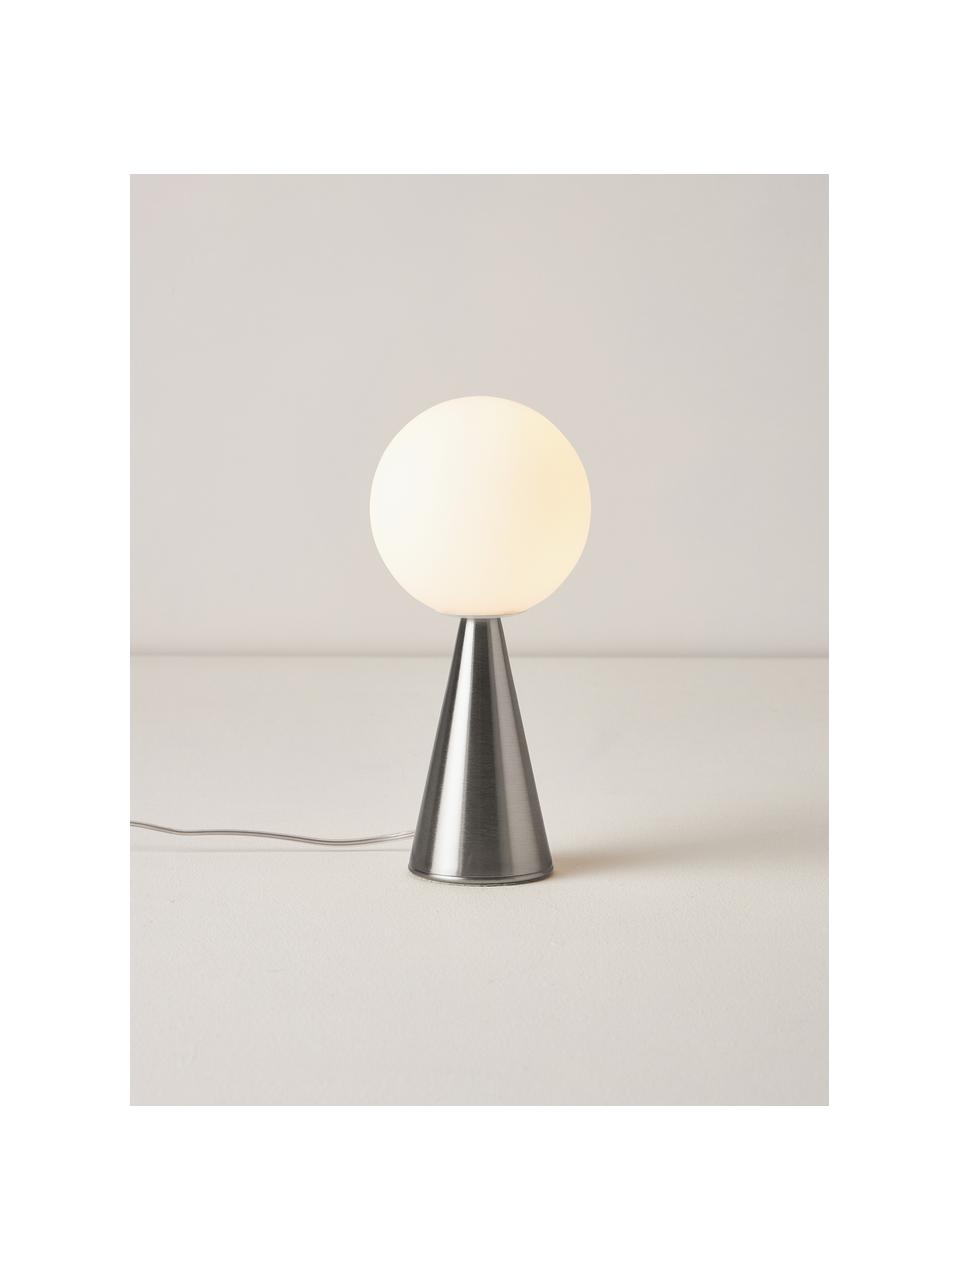 Malá stolní lampa Bilia, ručně vyrobená, Bílá, stříbrná, Ø 12 cm, V 26 cm